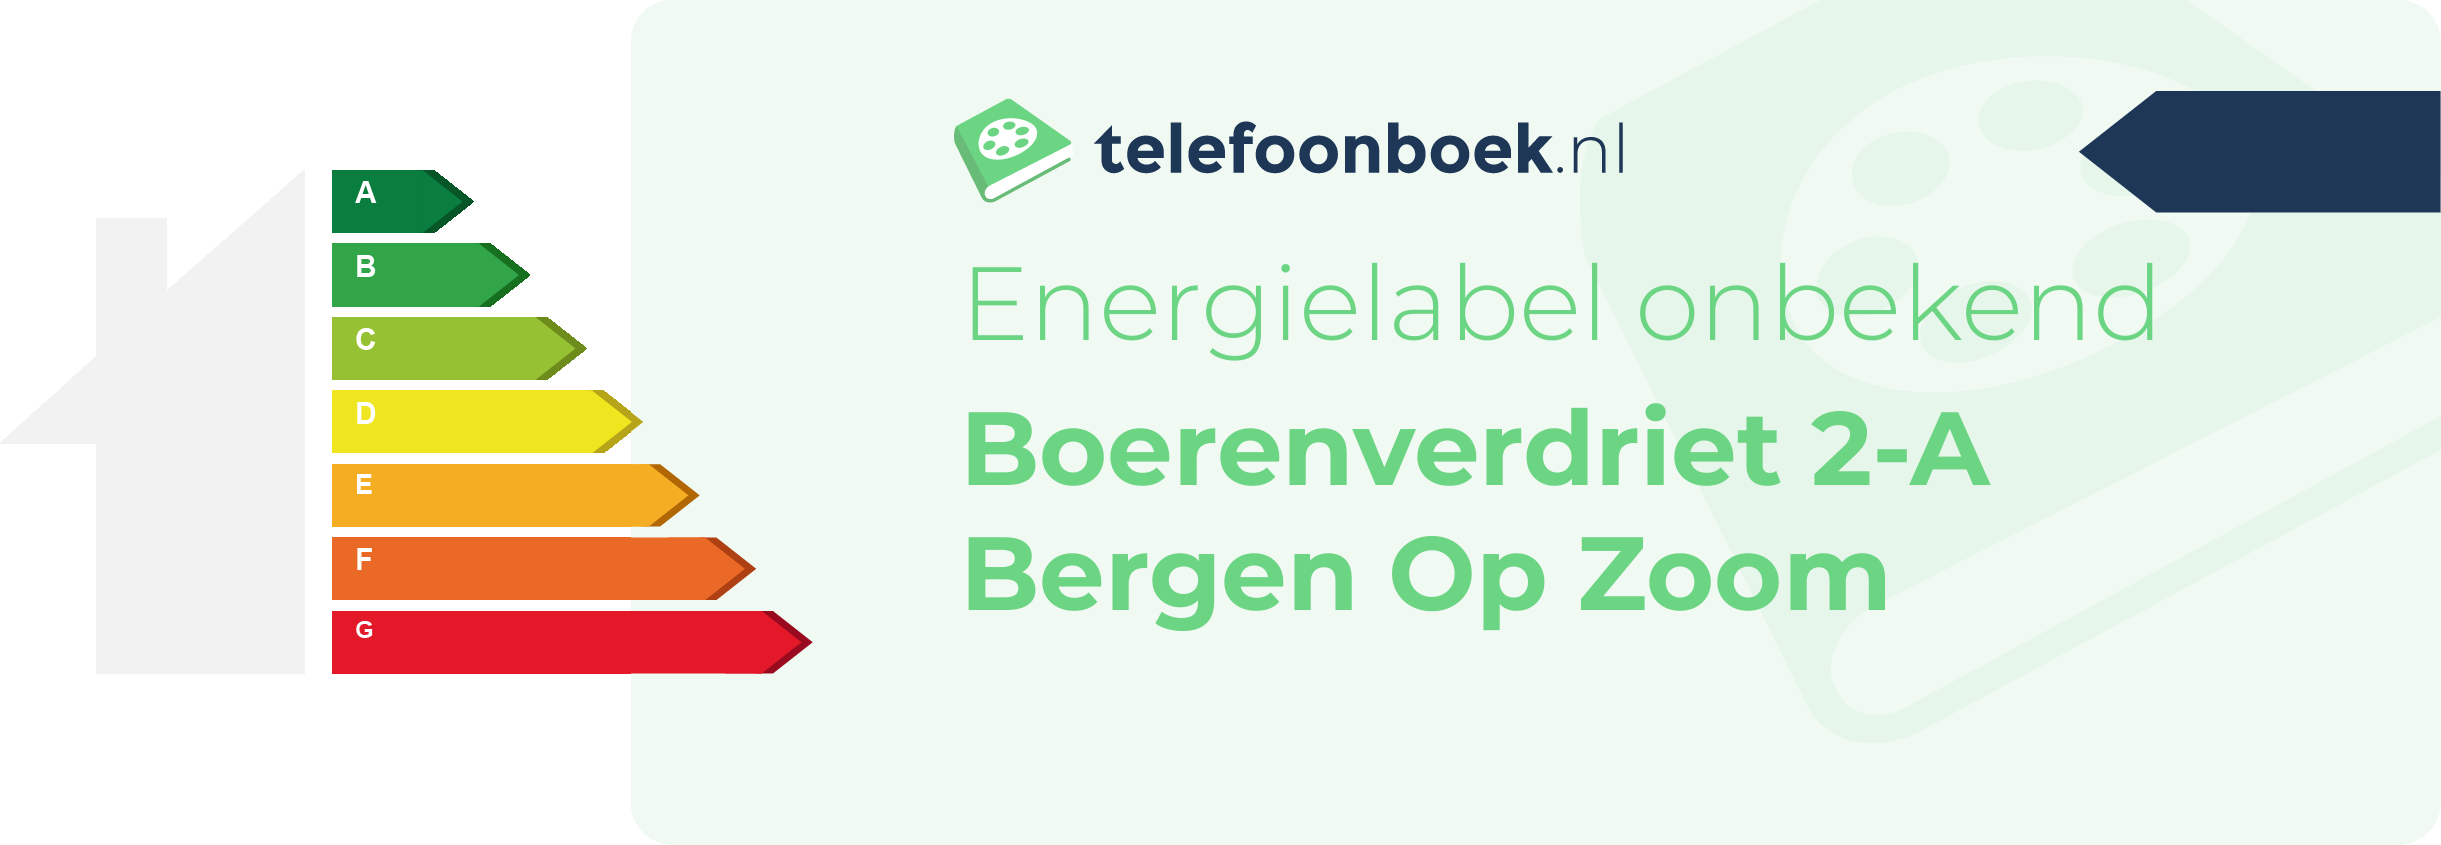 Energielabel Boerenverdriet 2-A Bergen Op Zoom